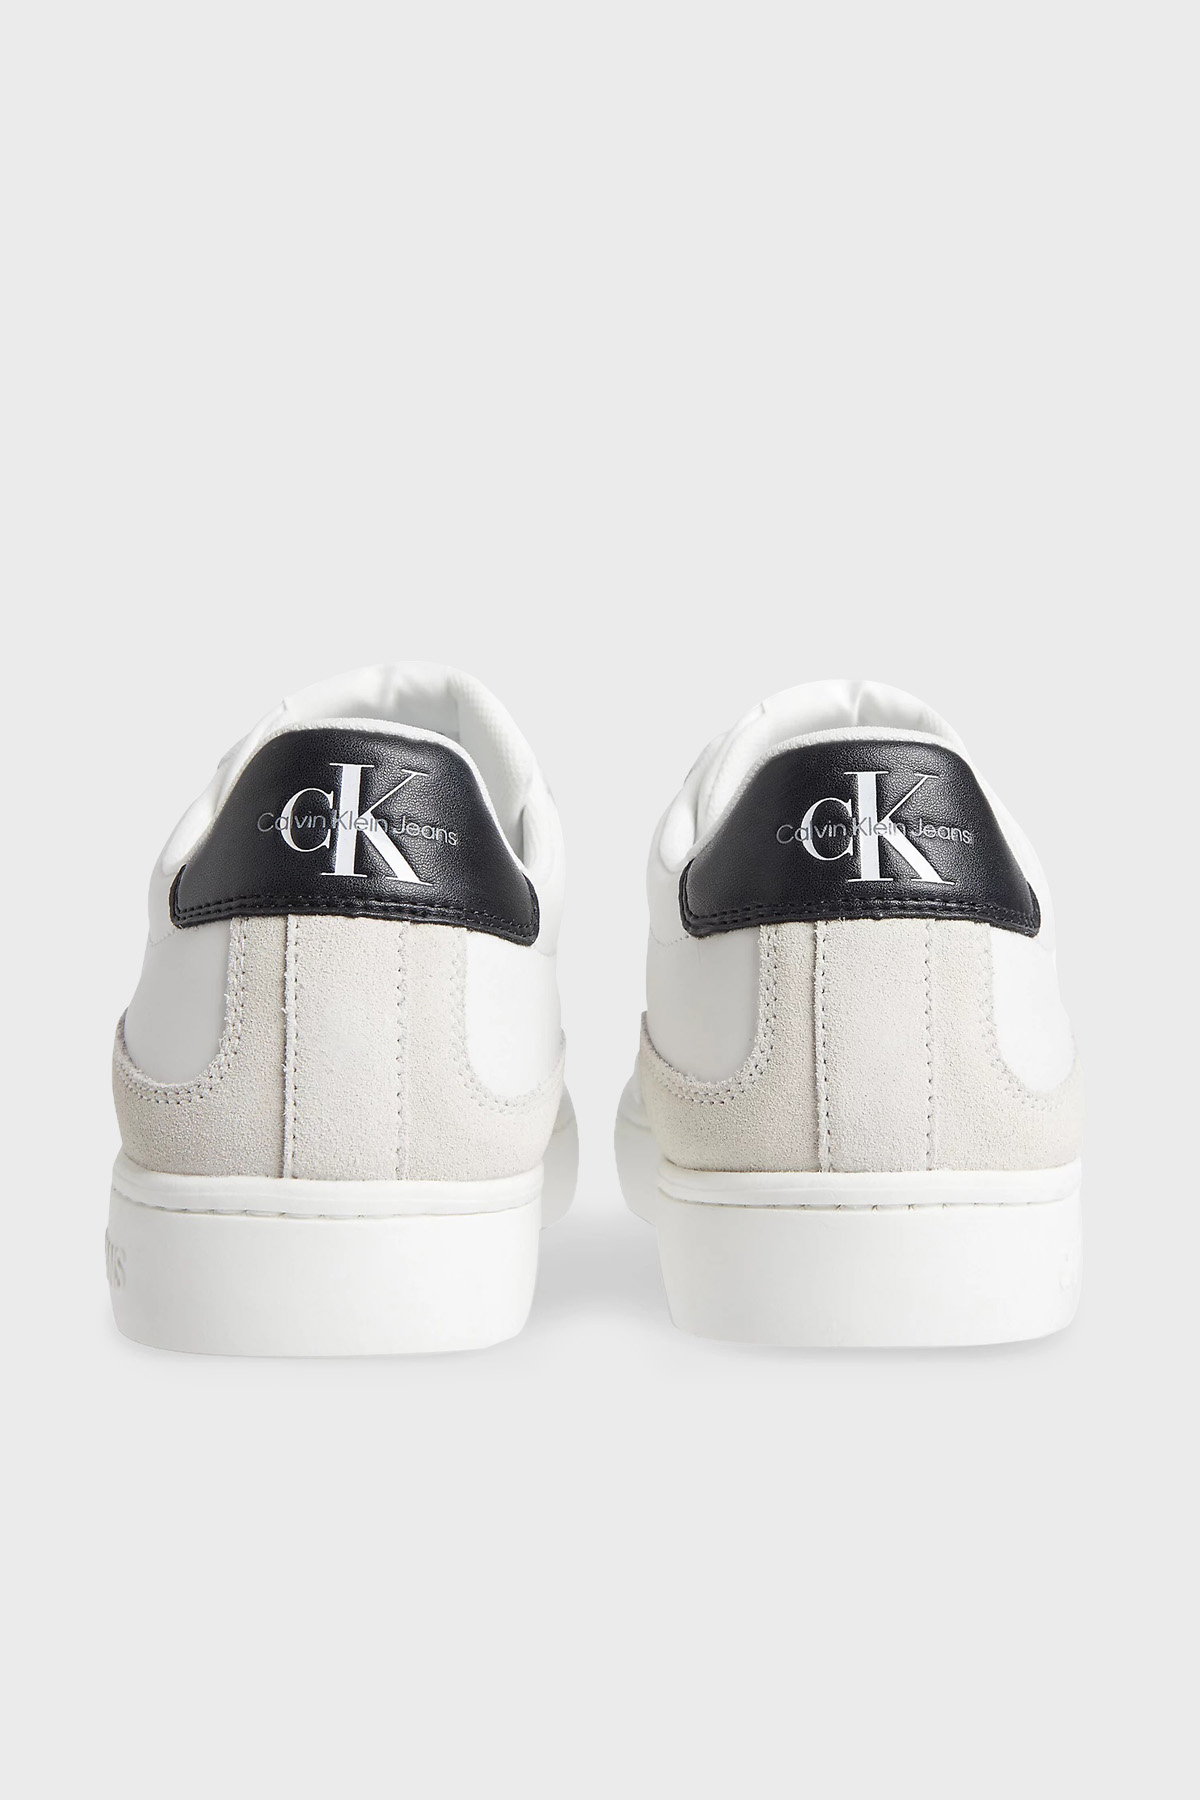 Calvin Klein Logolu Deri Sneaker Erkek Ayakkabı YM0YM00432 0K4 BEYAZ-SİYAH